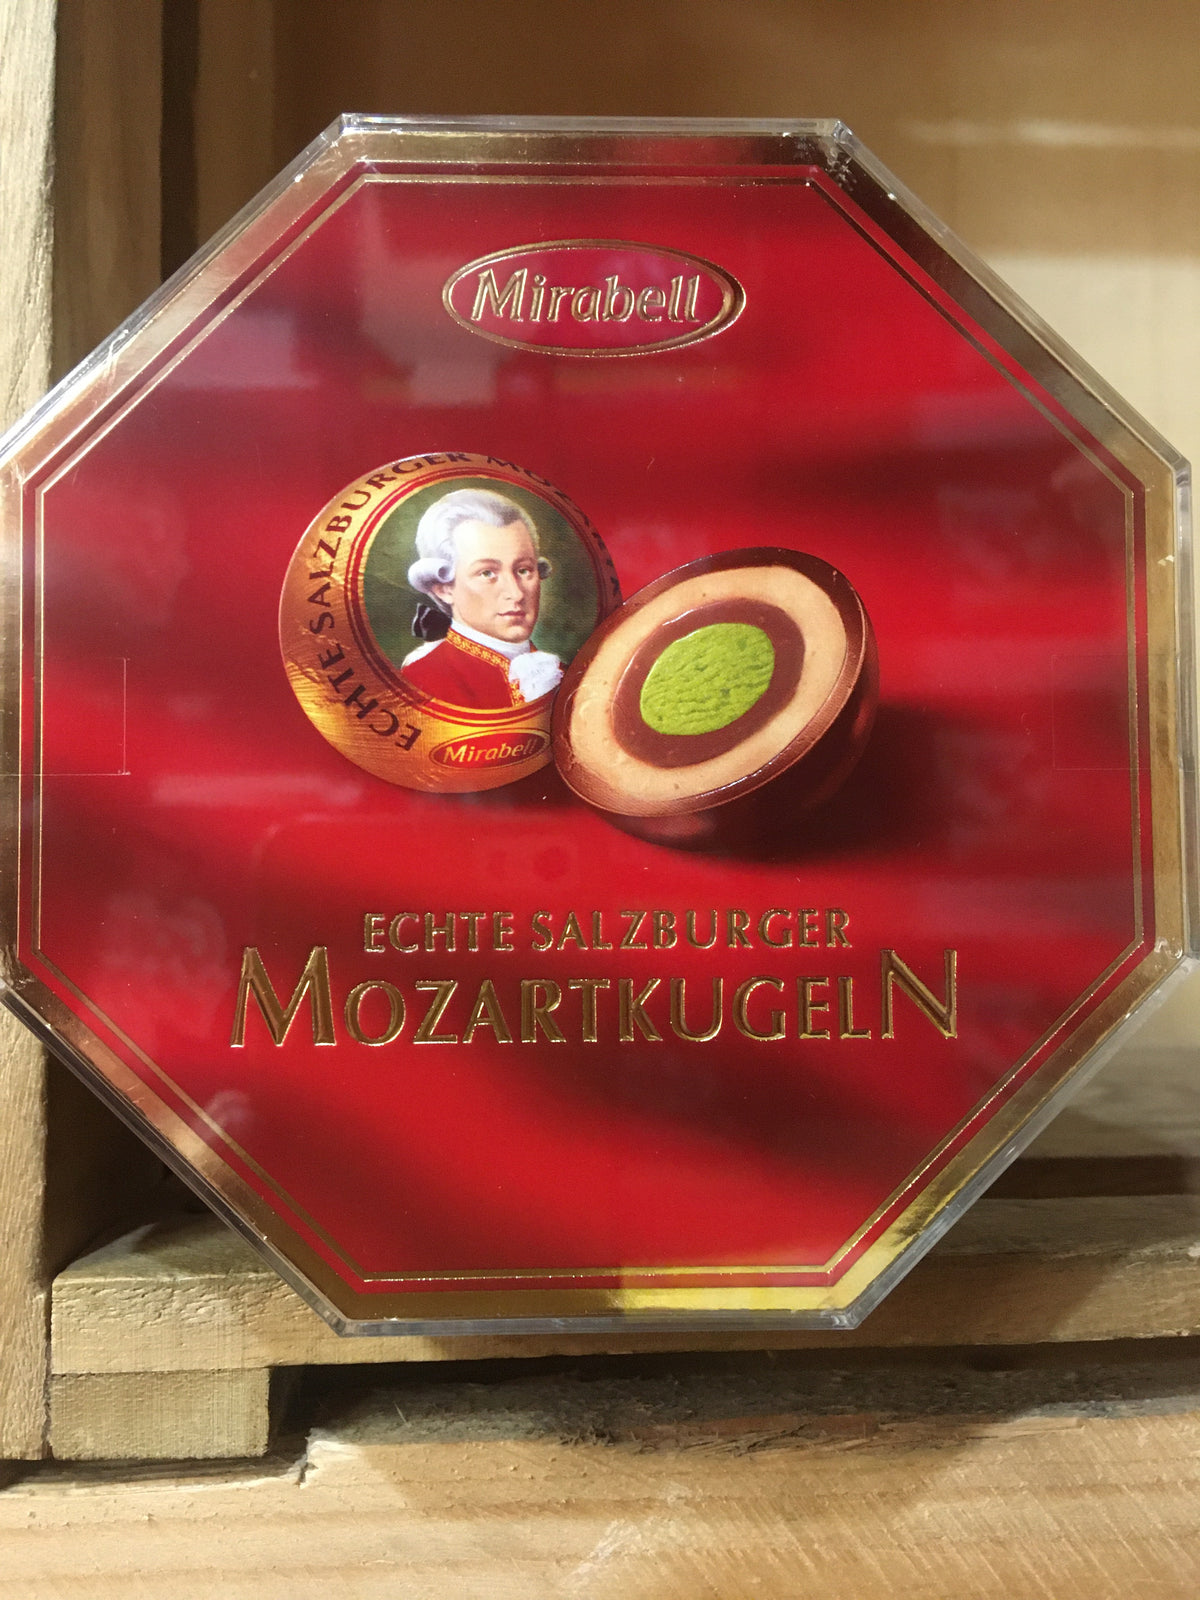 Mozart Kugeln Marzipan Chocolates - 400g